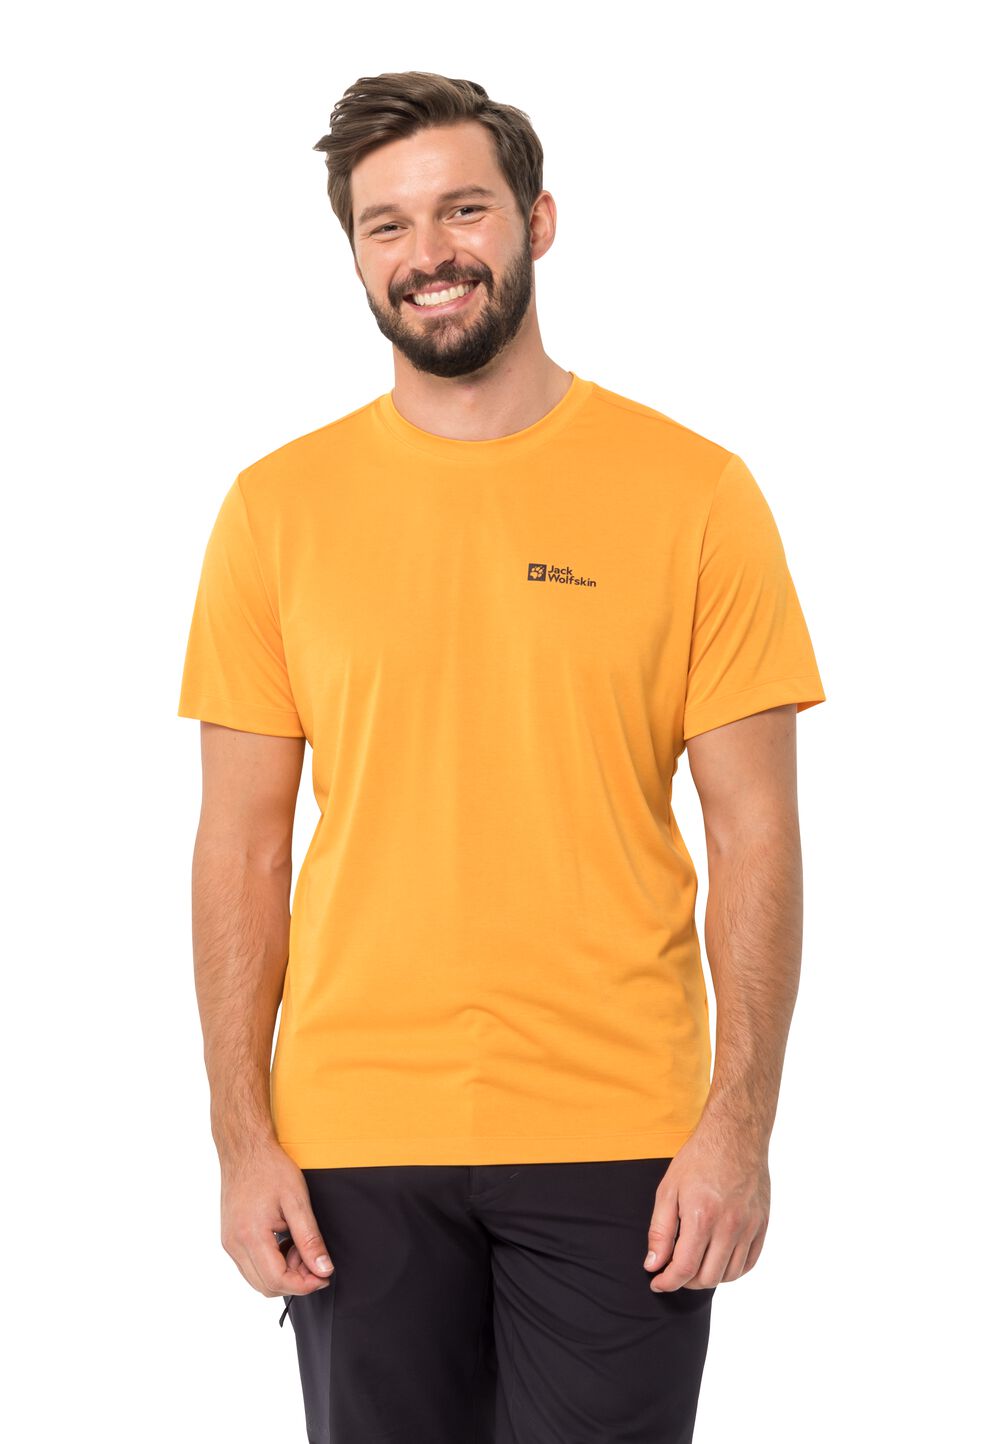 Jack Wolfskin Funktionsshirt Herren Hiking S/S Graphic T-Shirt Men L braun orange pop von Jack Wolfskin